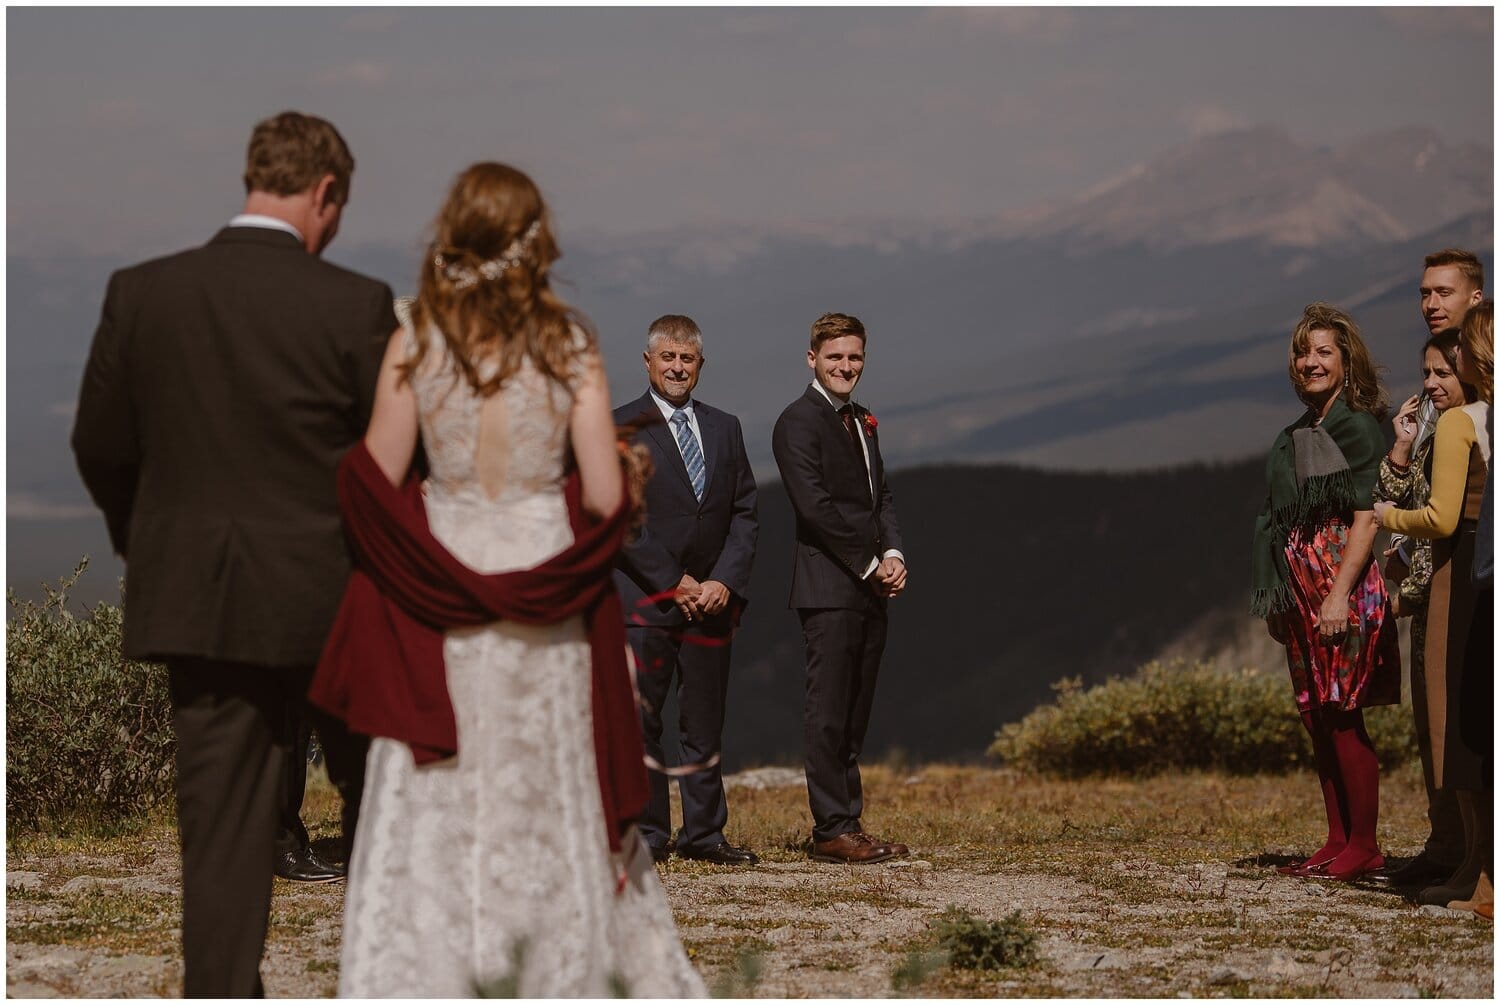 Bride walks towards groom at intimate elopement ceremony in Buena Vista, Colorado. 